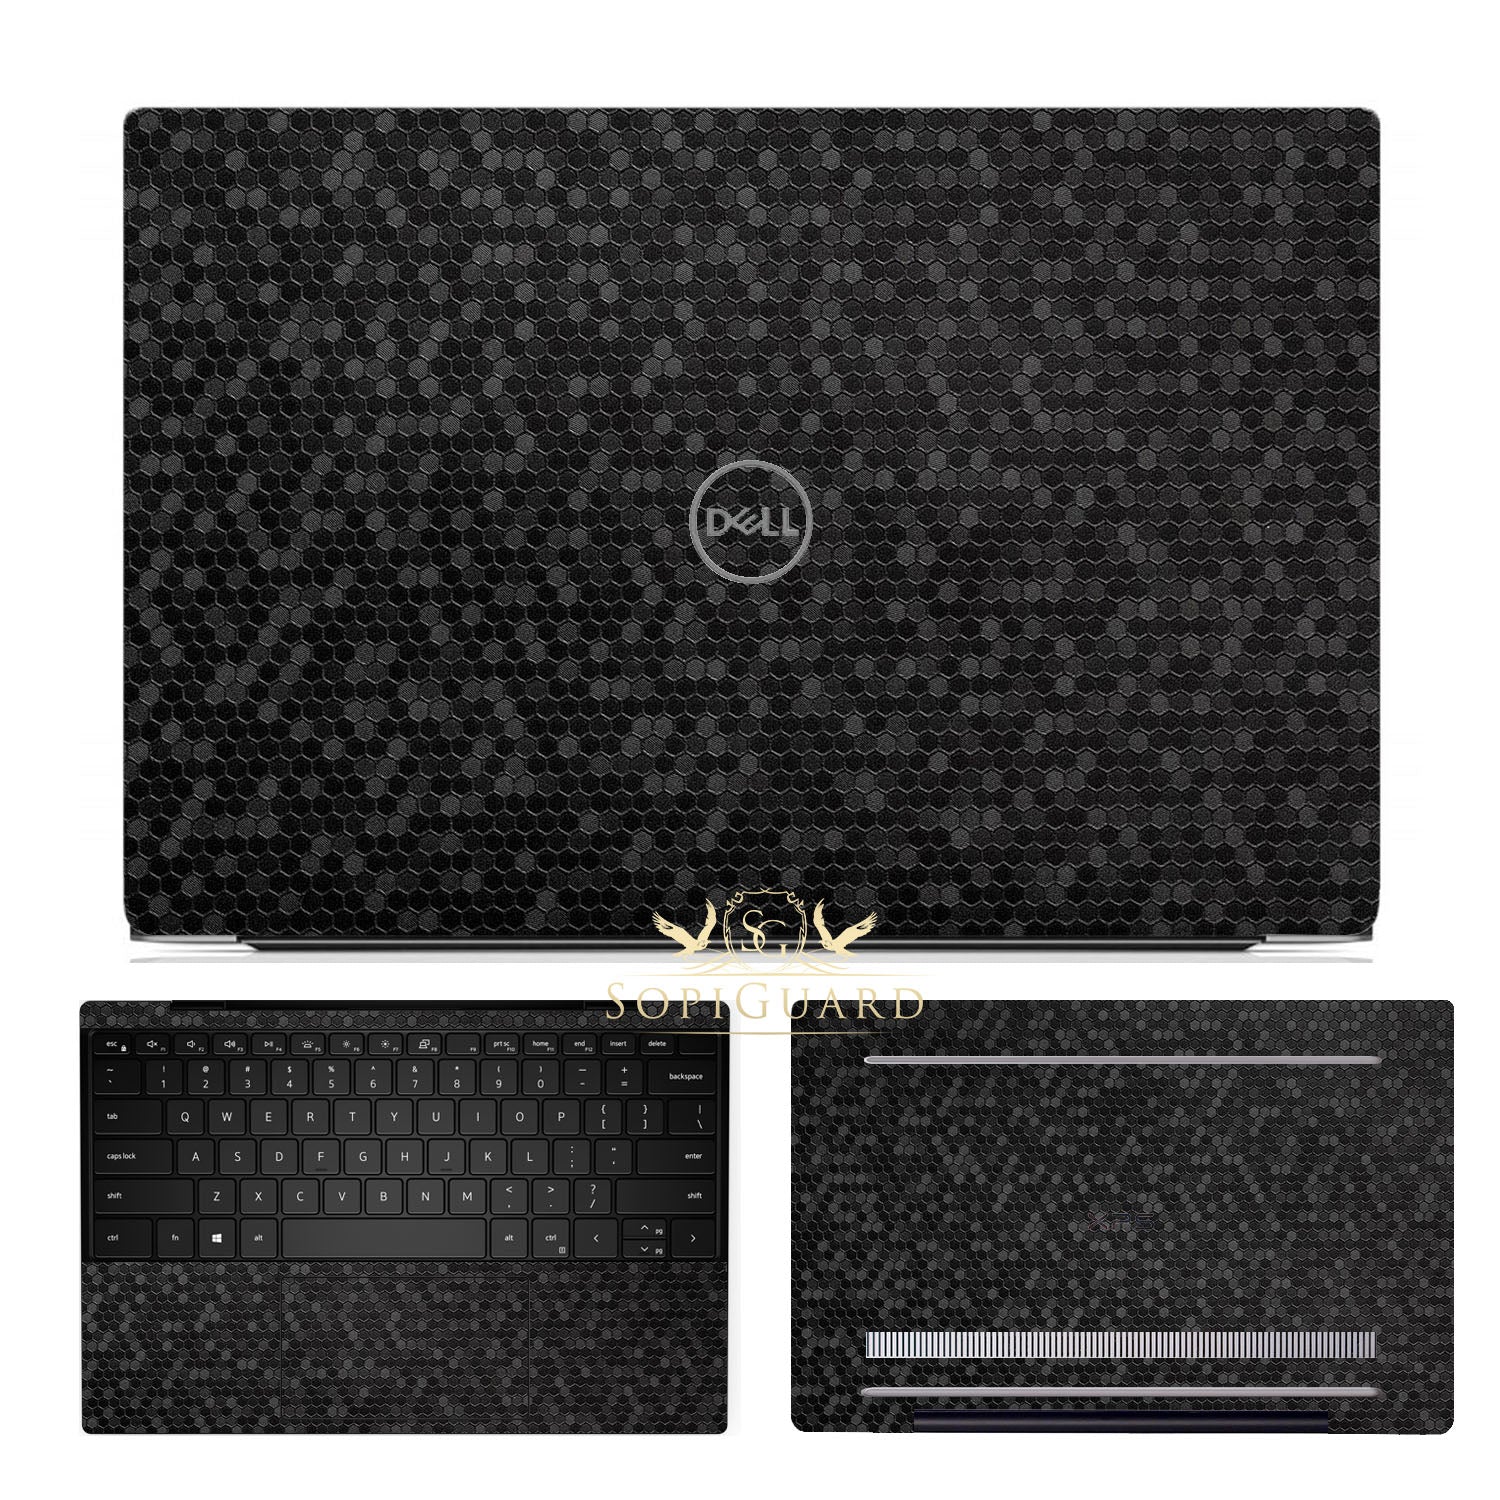 Dell XPS 17 (9700) sticker skin